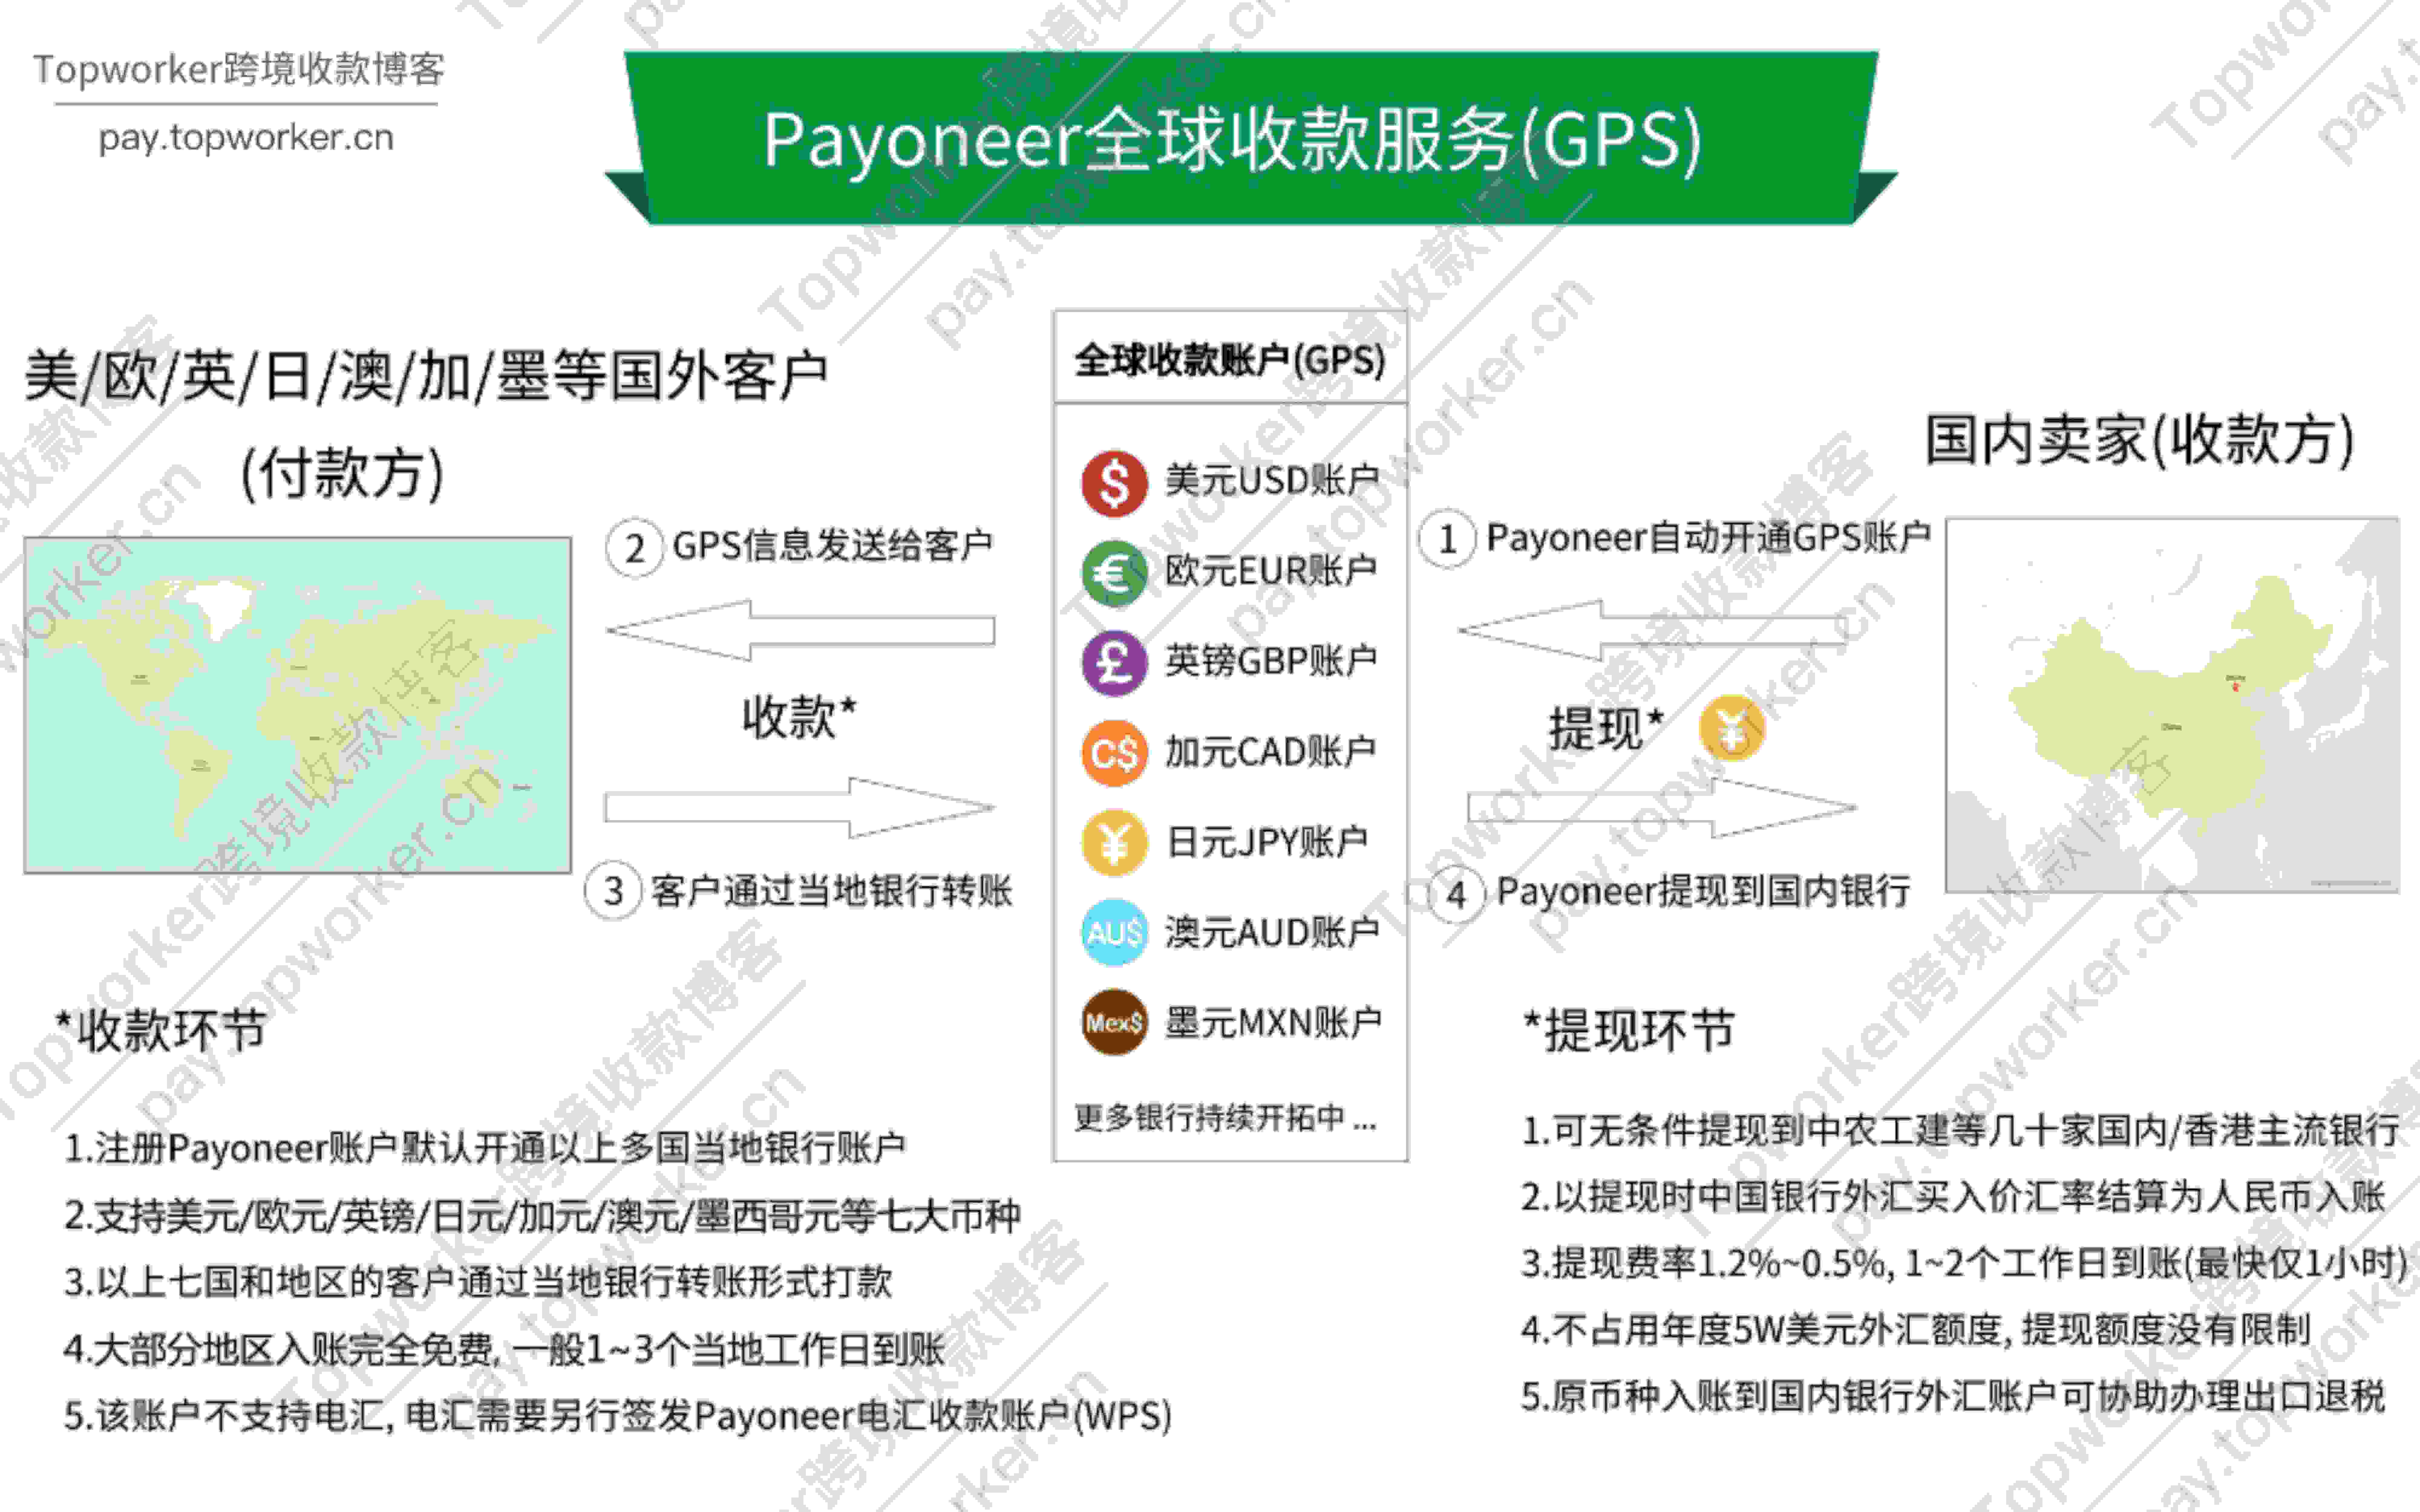 Payoneer全球收款服务(GPS)收款流程示意图